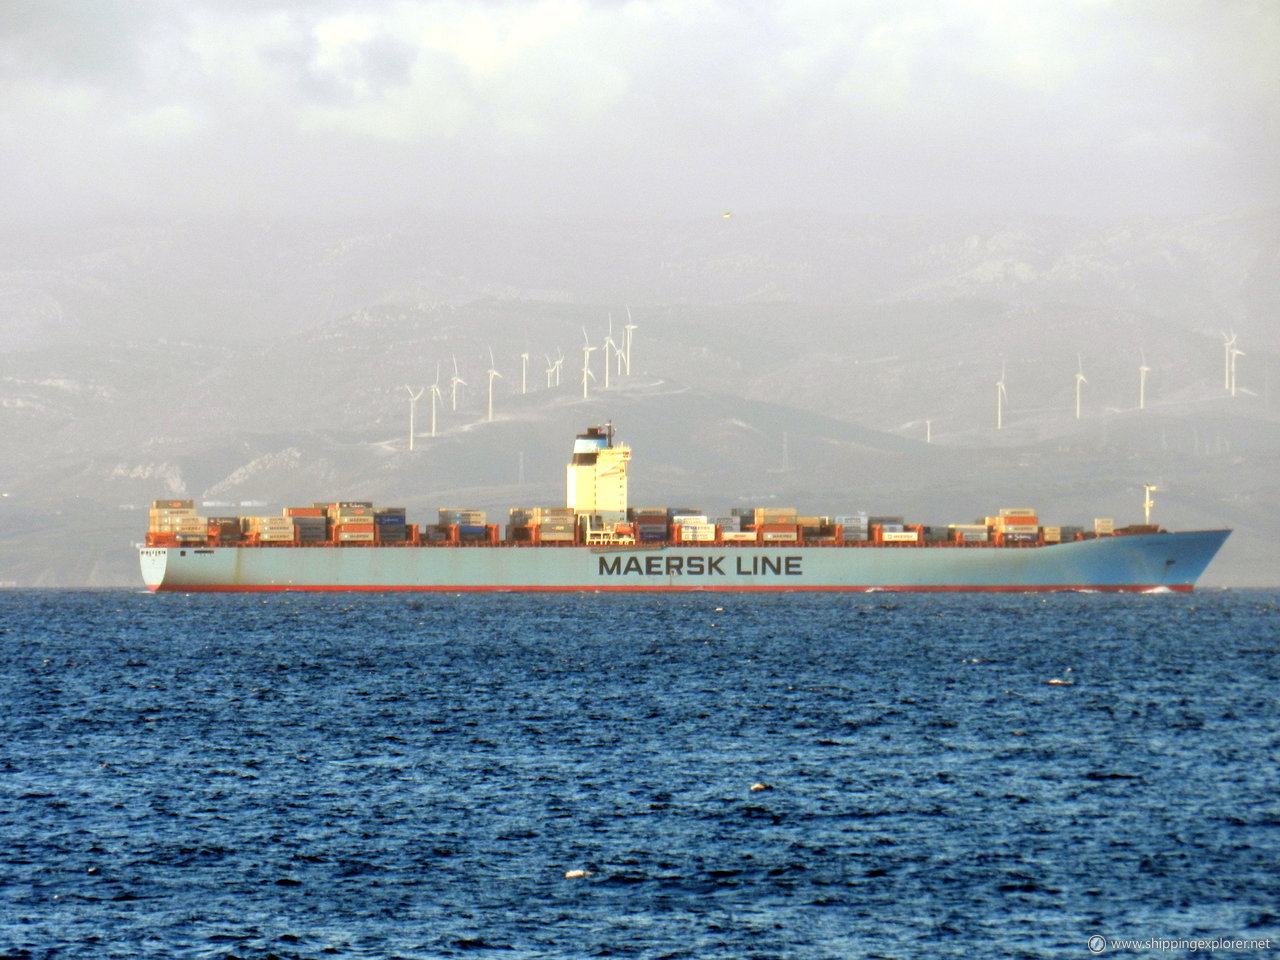 Elly Maersk